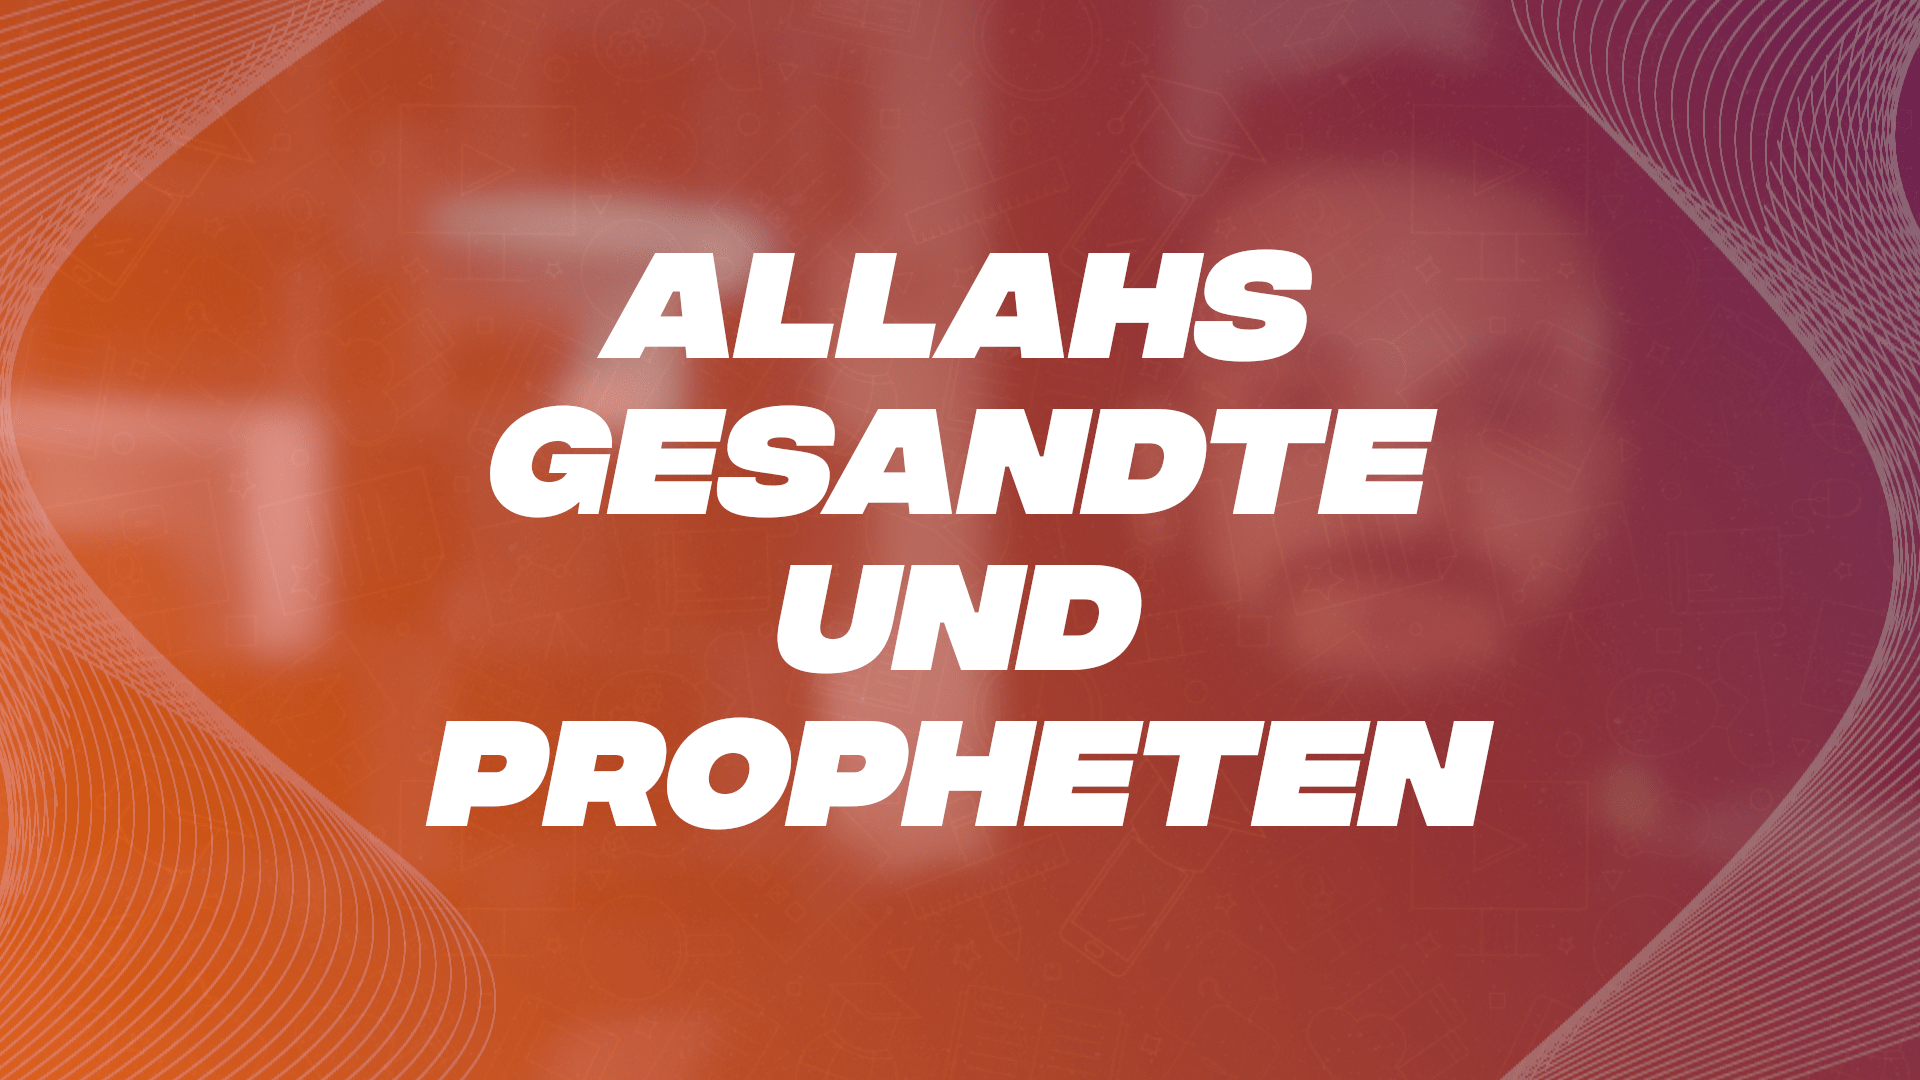 10 Allahs Gesandte und Propheten